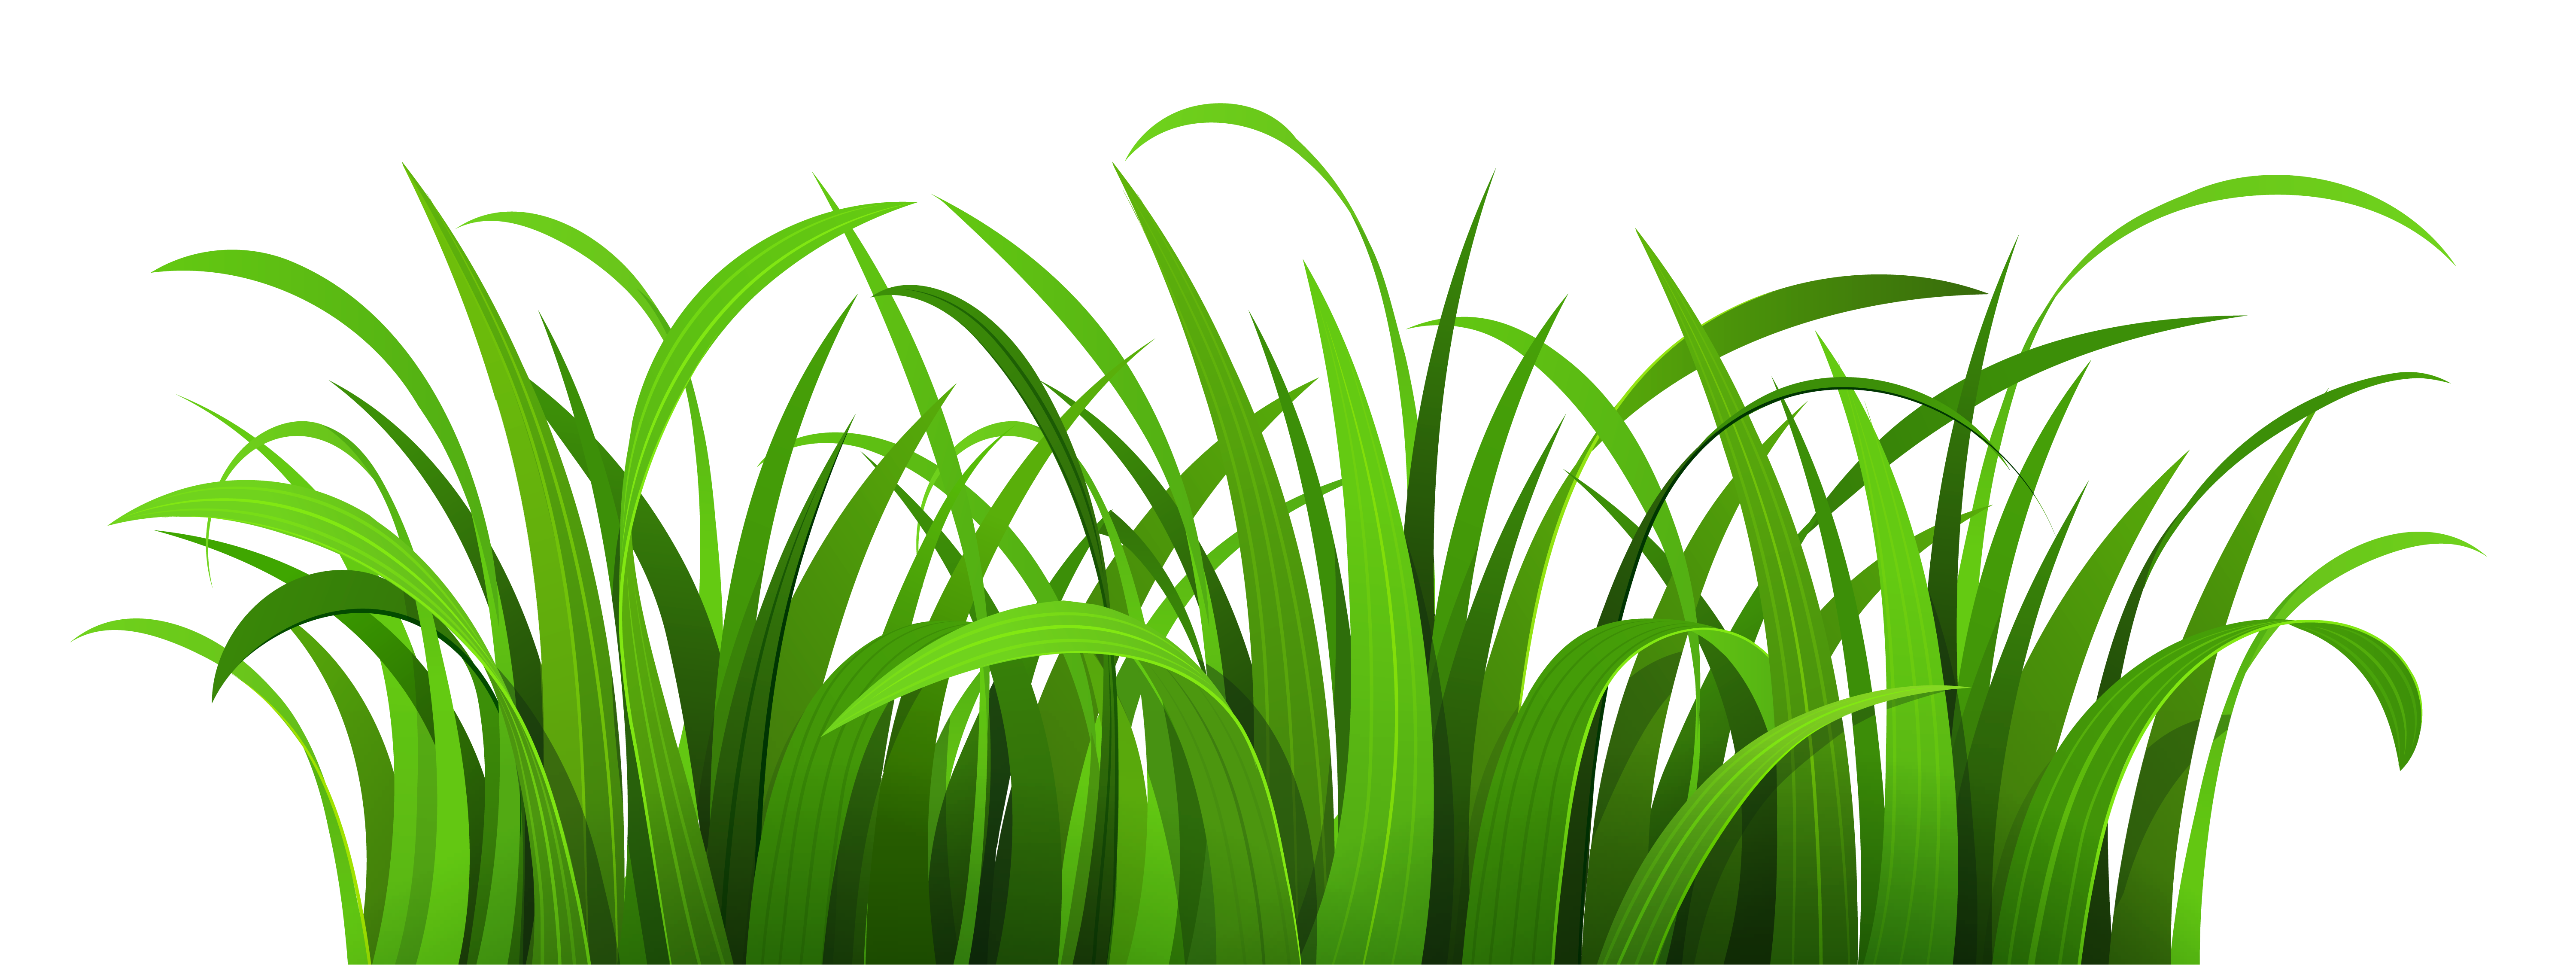 Growing grass clipart 